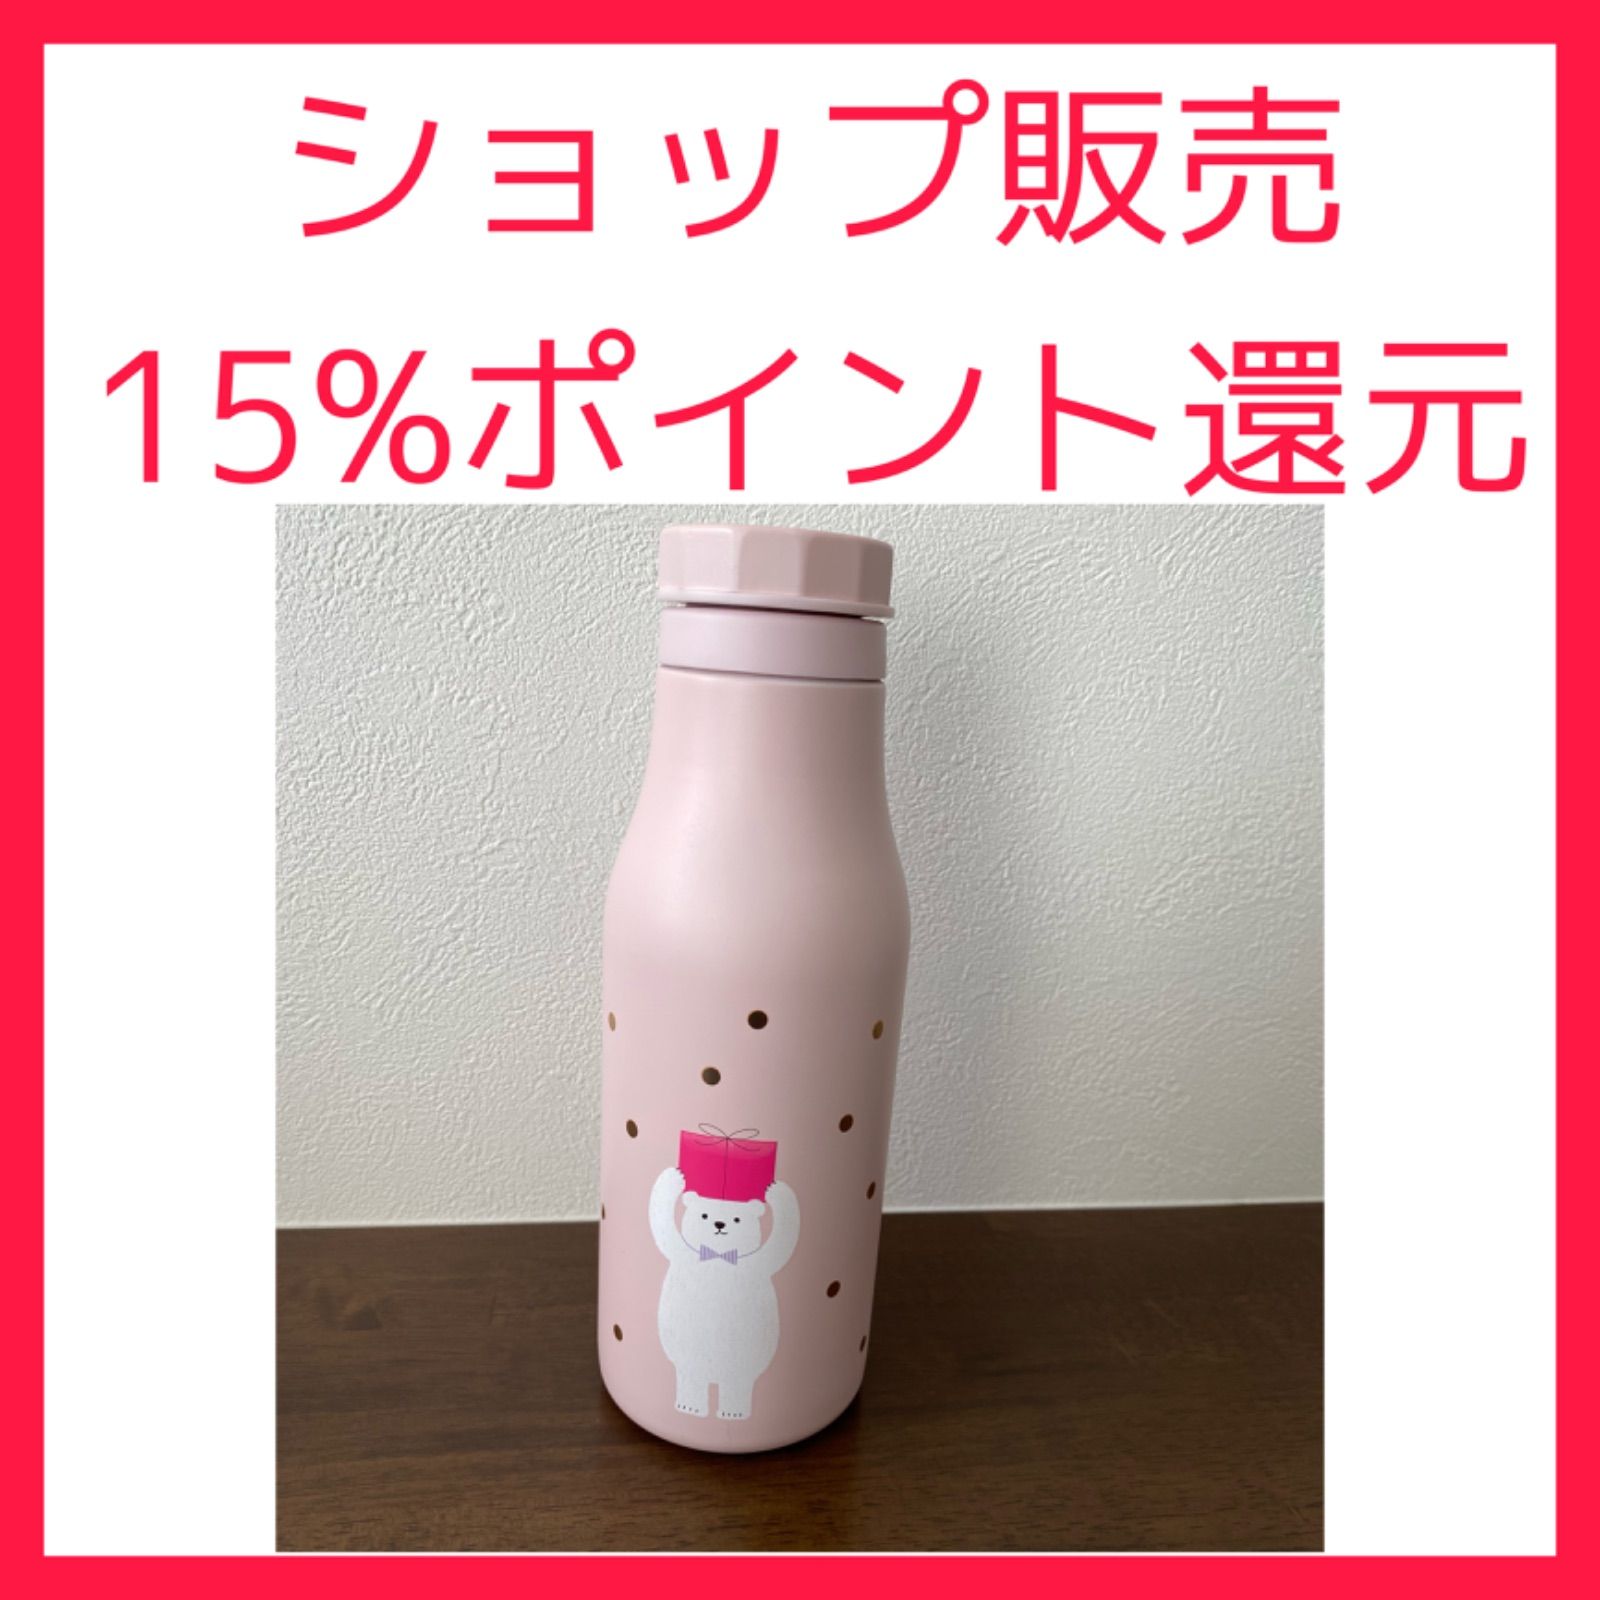 憧れの 【新品・箱あり】スタバ ホリデー2021 ステンレスボトル